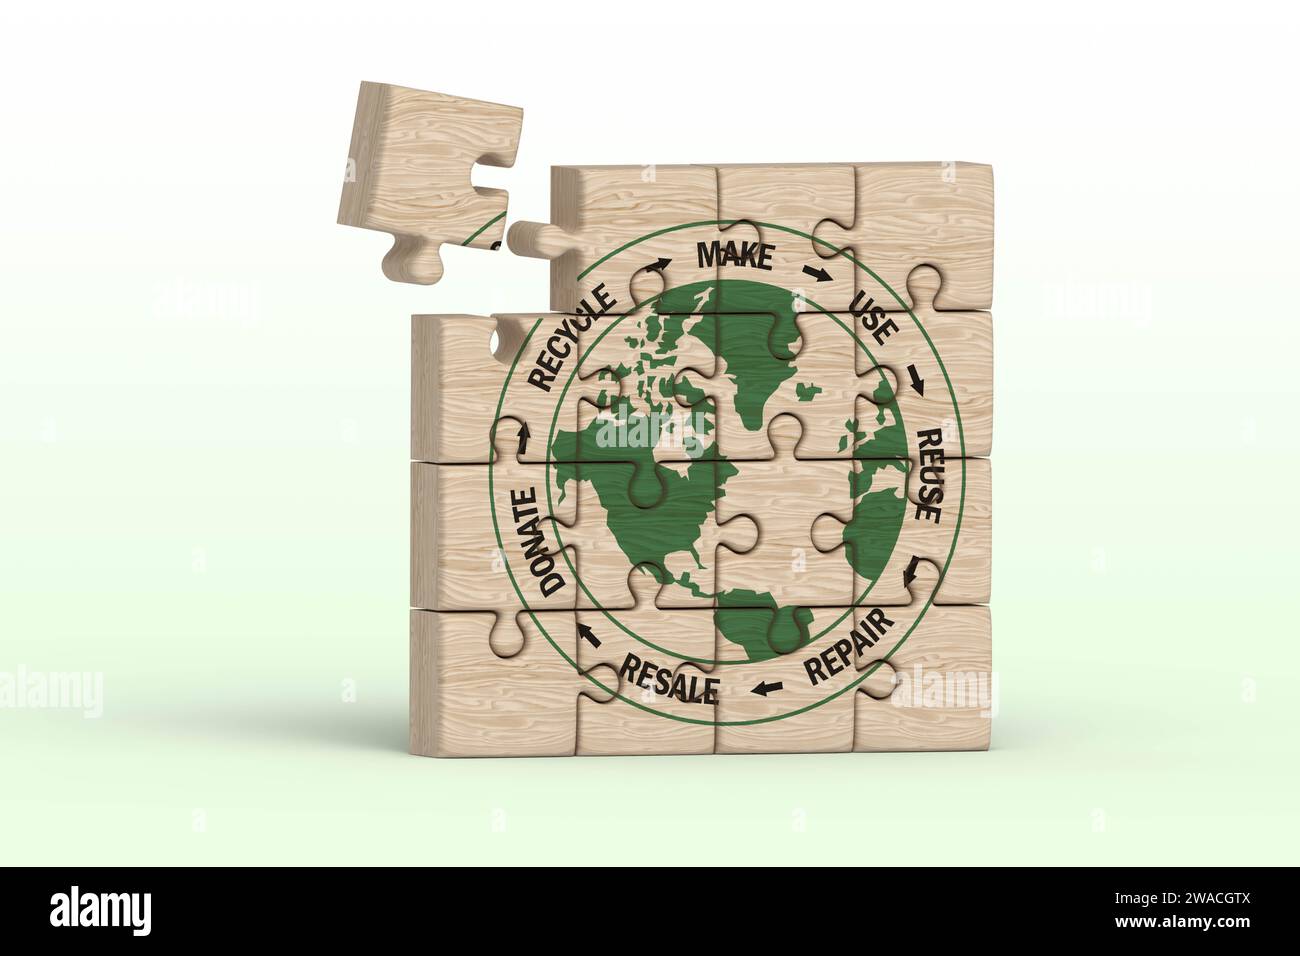 Kreislaufwirtschaft Symbol auf unvollständigem Holzpuzzle, machen, verwenden, wiederverwenden, reparieren, recyceln, spenden, weiterverkaufen für nachhaltigen Konsum, retten Sie den Planeten Null Stockfoto